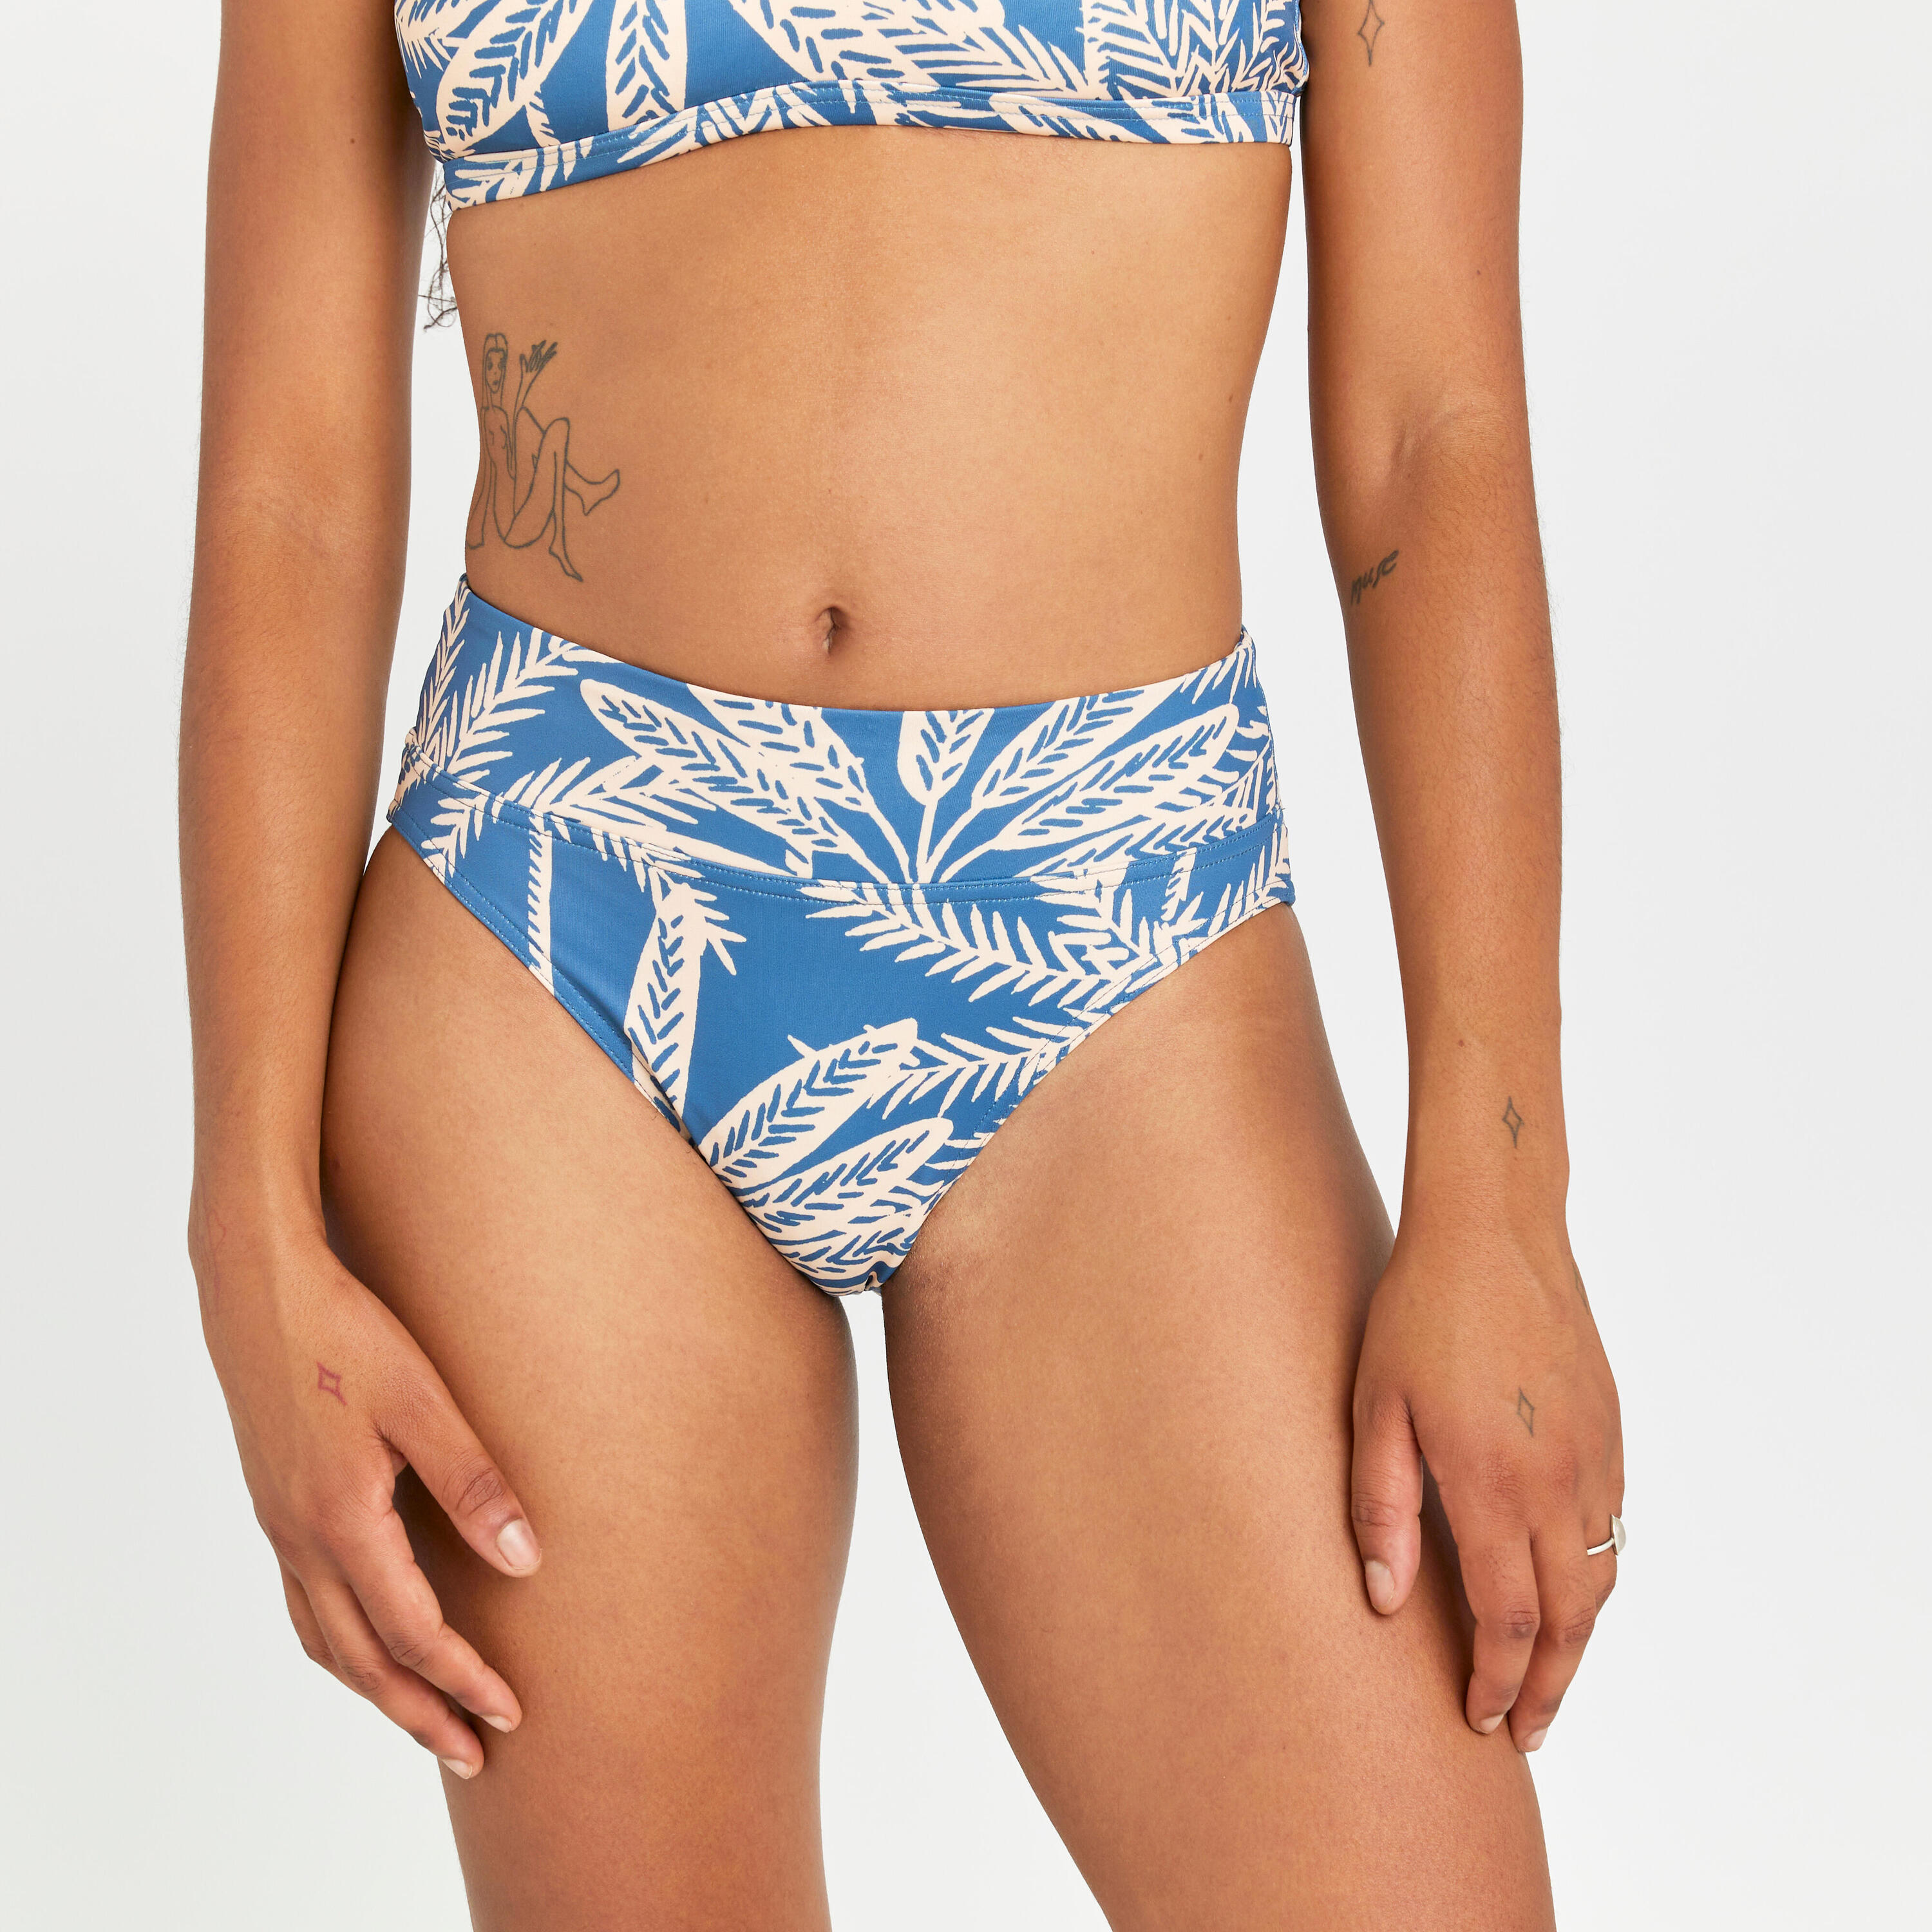 Women's high-waisted briefs swimsuit bottoms - Nora palmer blue 1/4